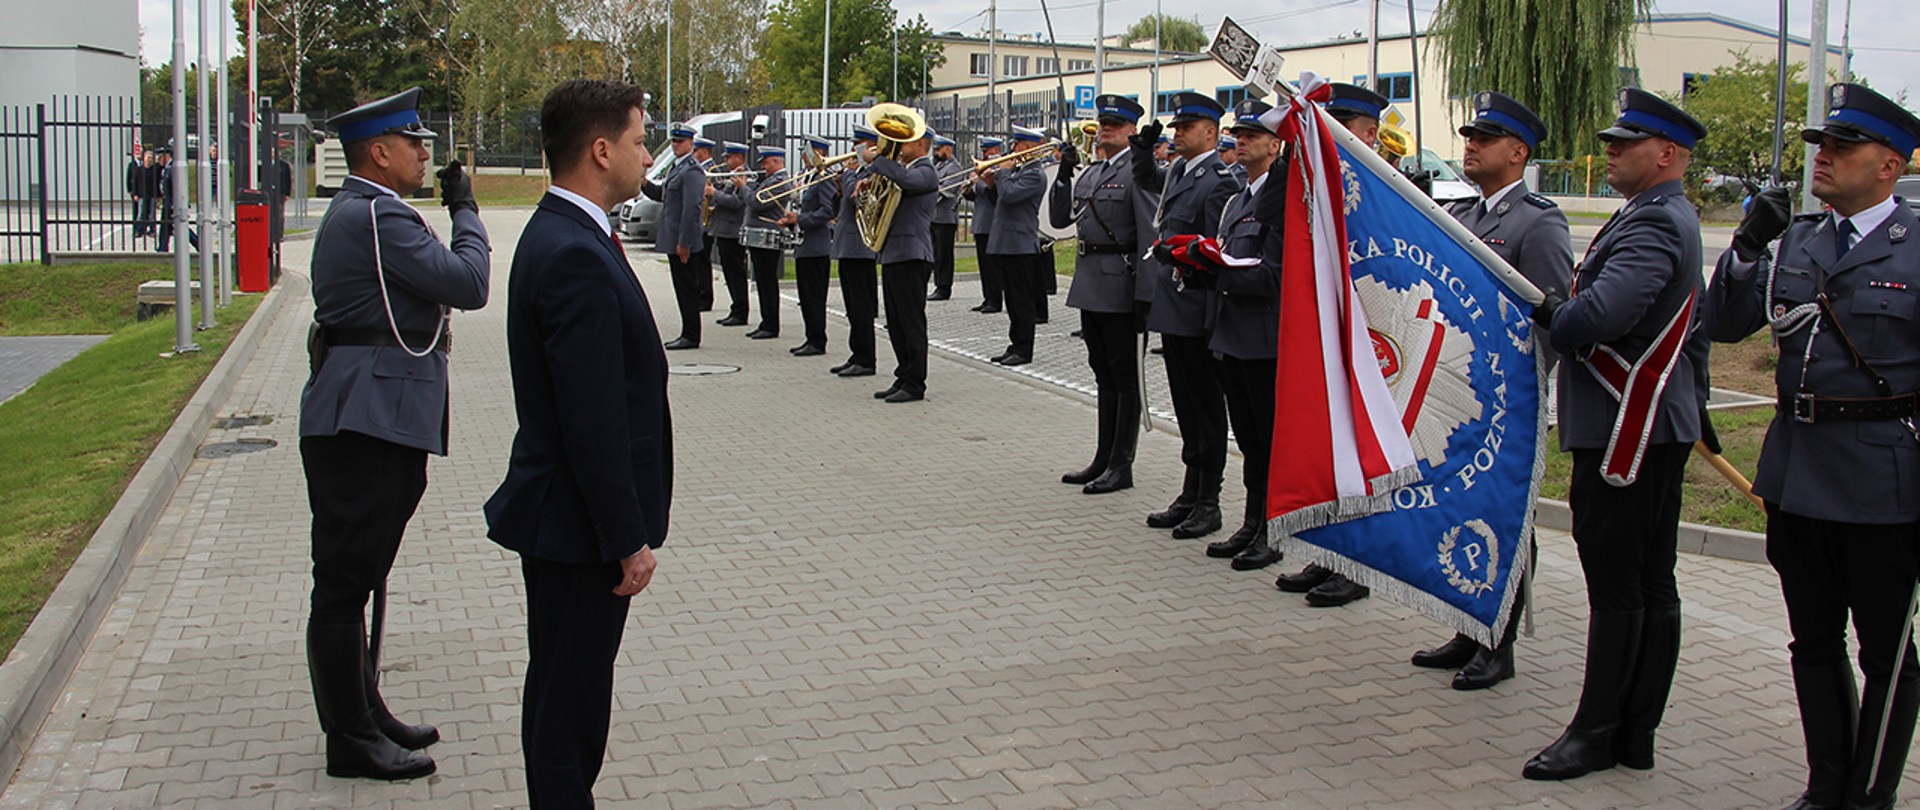 Uroczystość otwarcia nowej siedziby Komendy Miejskiej Policji w Kaliszu